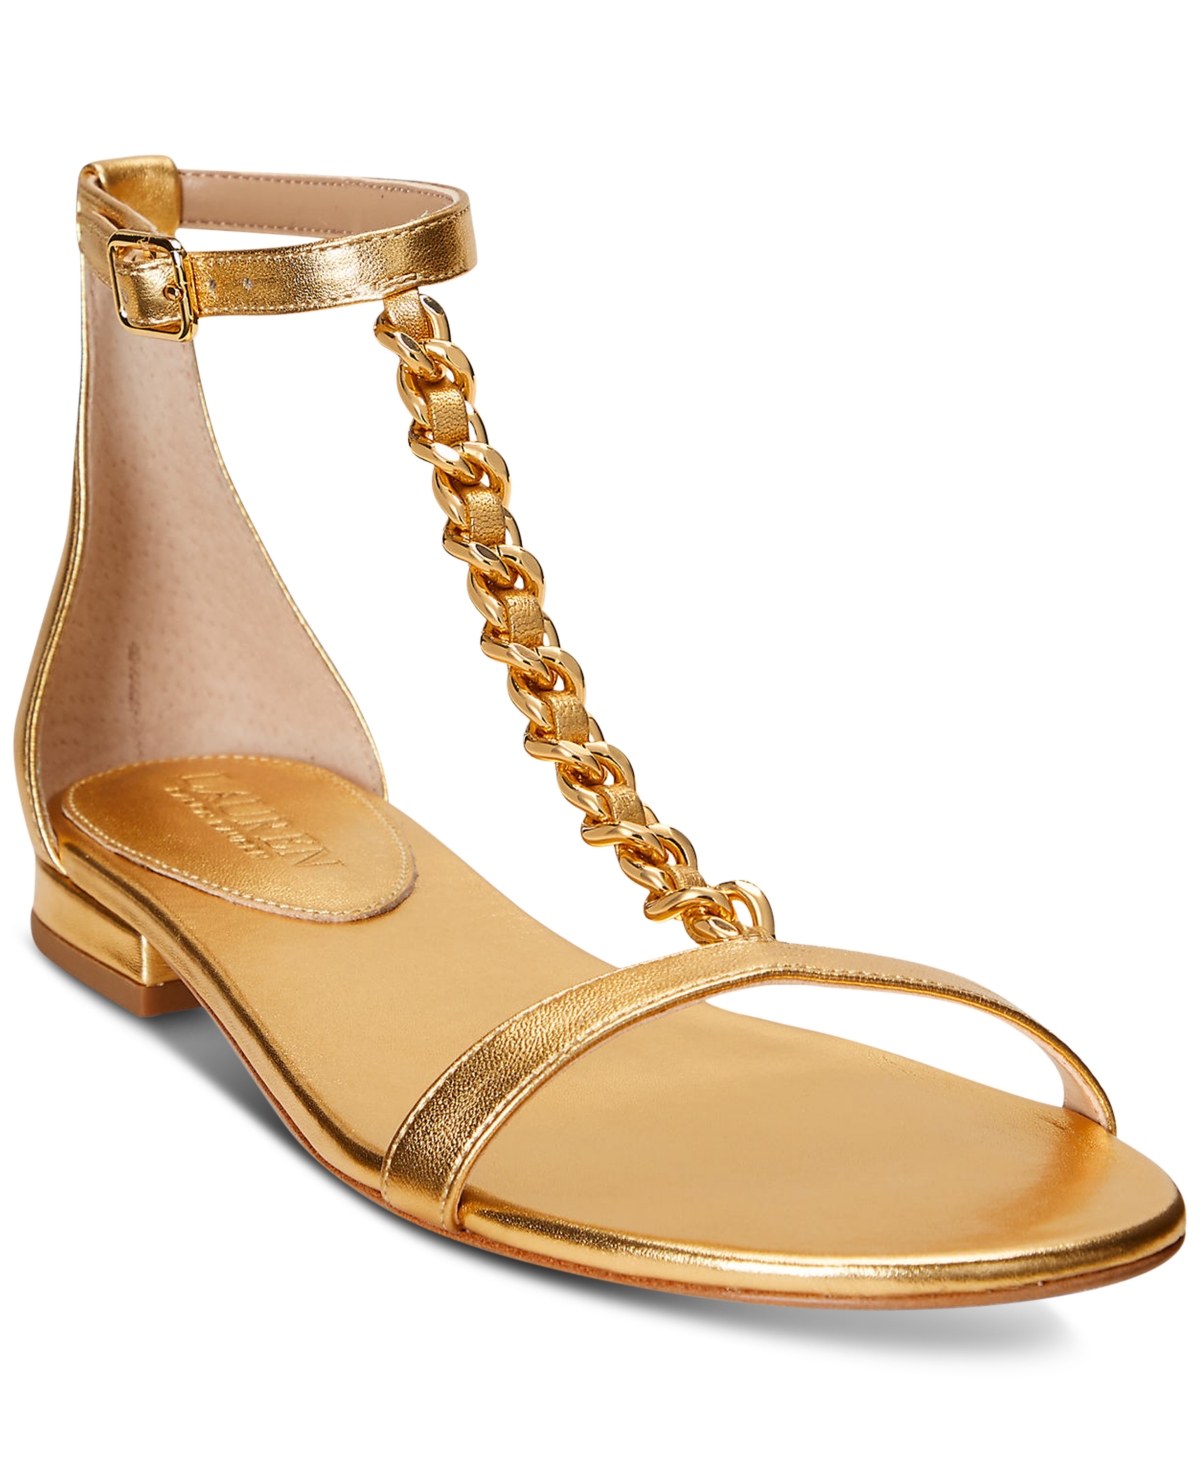 Lauren Ralph Lauren Sandals In Gold